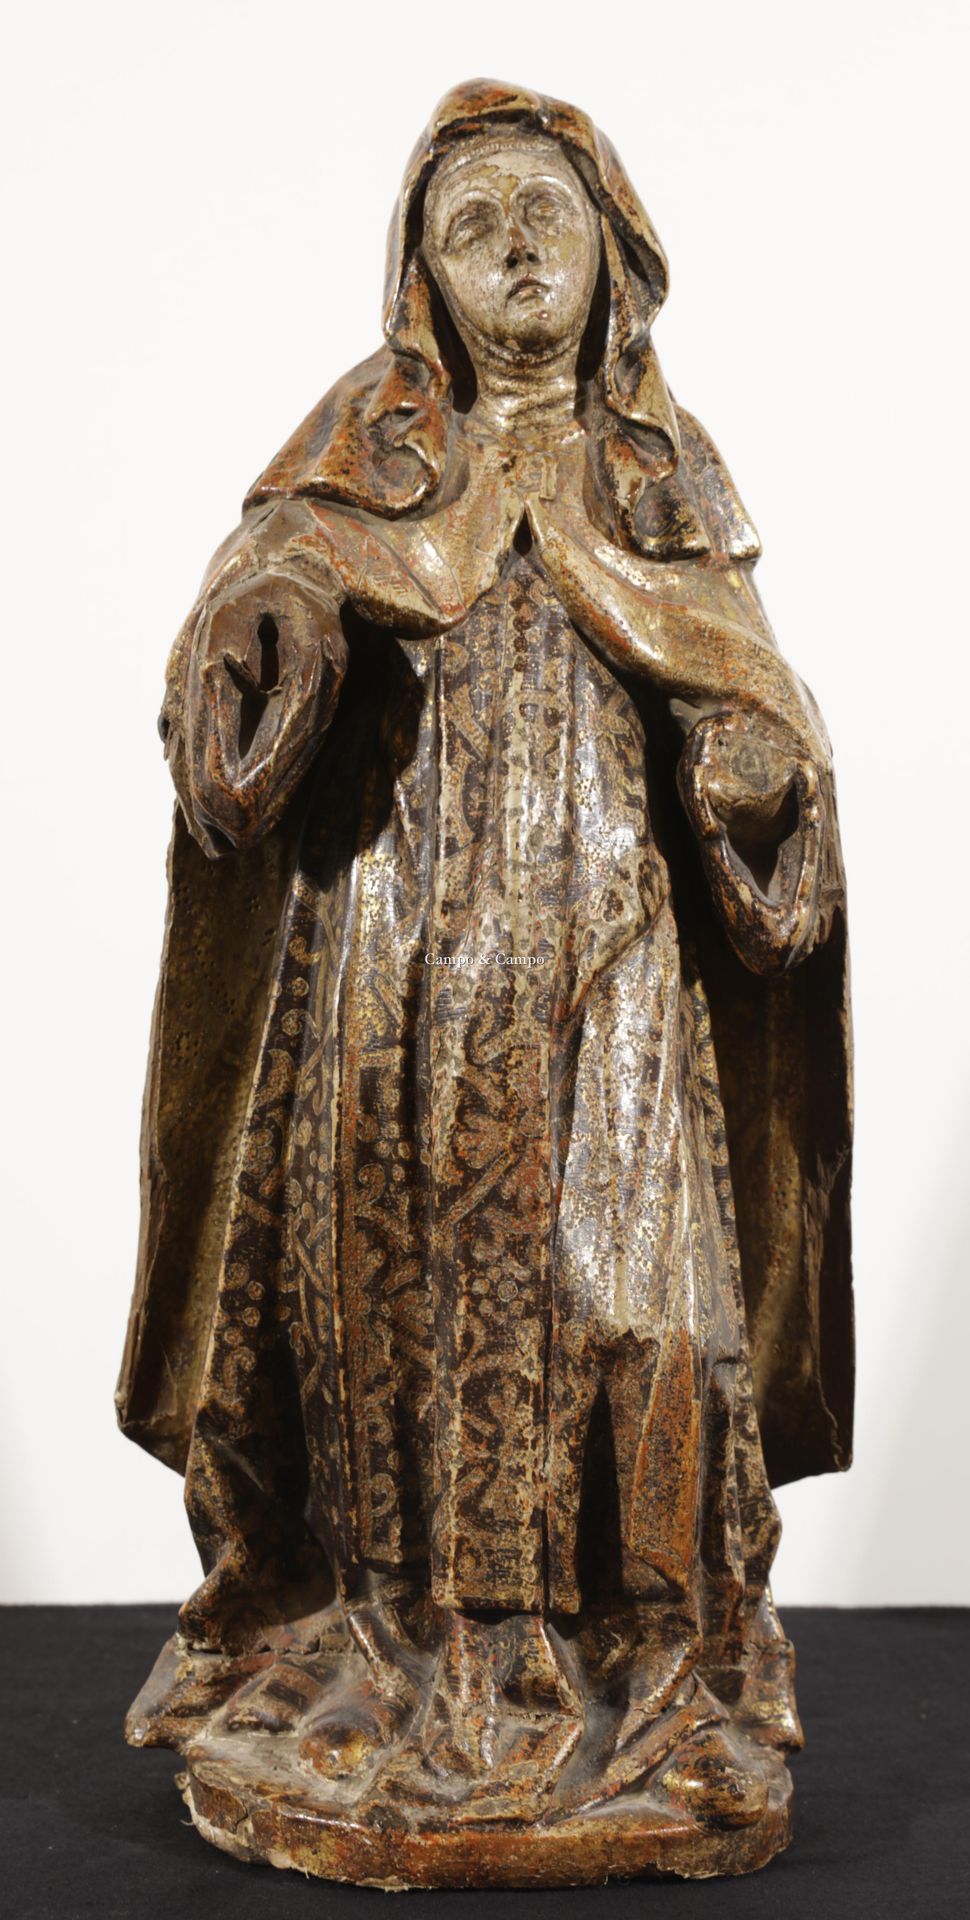 VARIA 1888-1975 Heilige Barbara, Skulptur aus polychromem Holz
Heilige Barbara, &hellip;